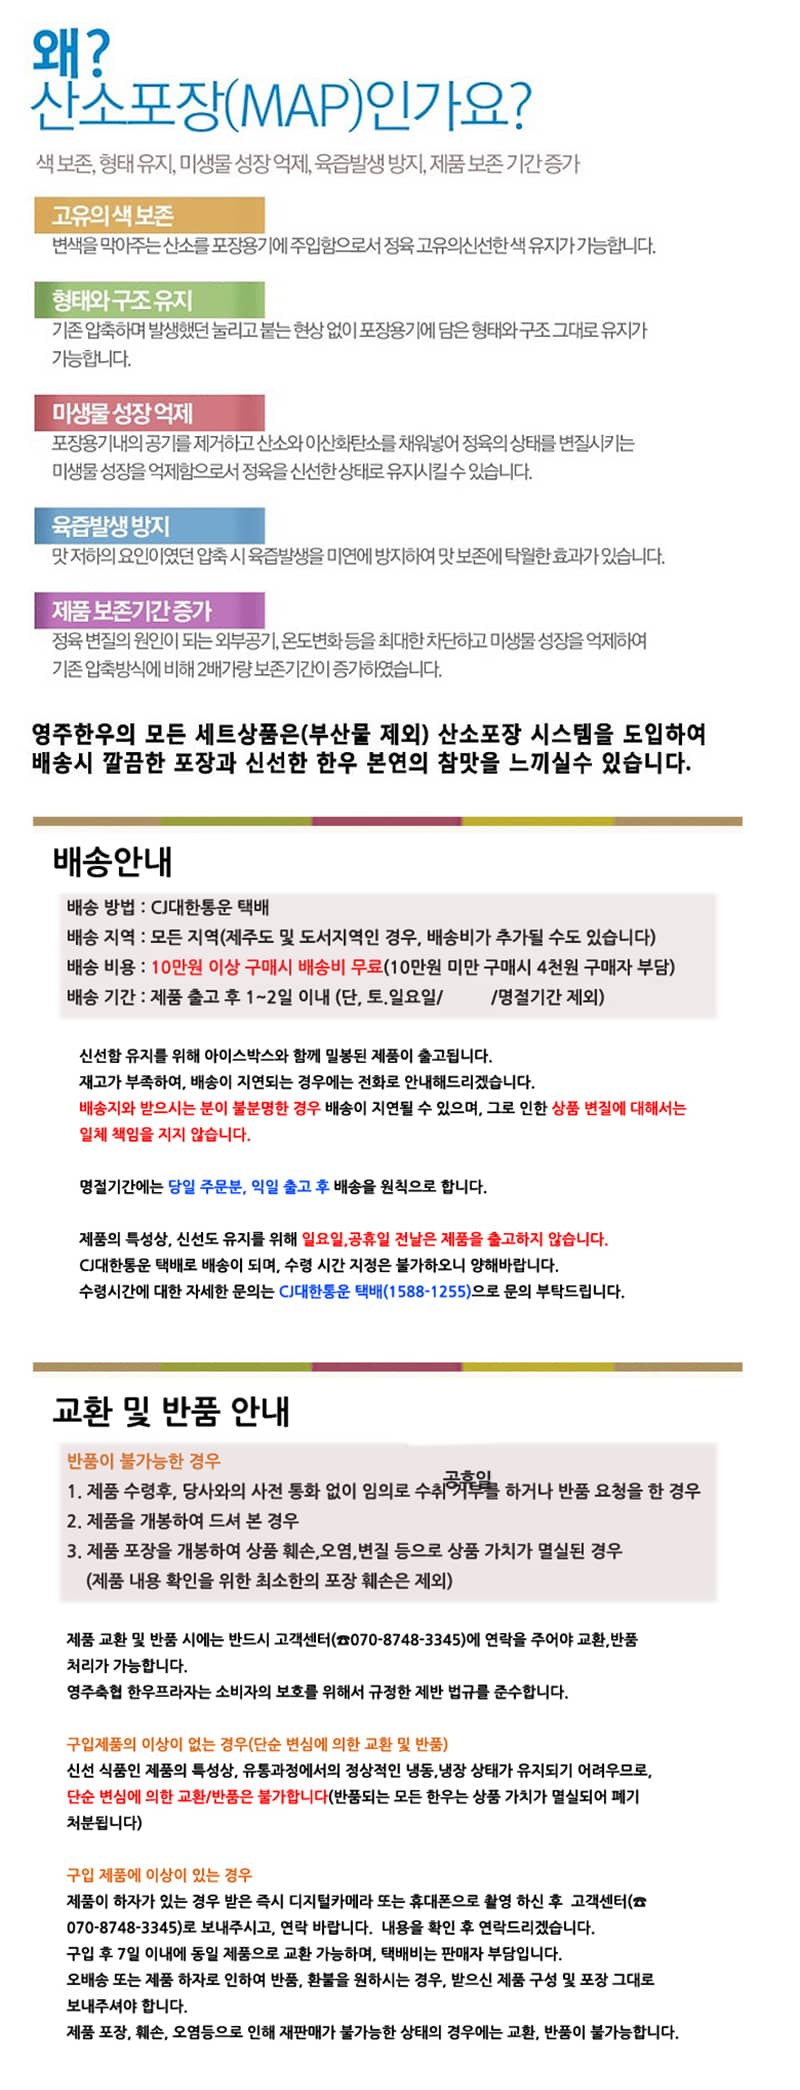 yeongjuchughyeob-yeongju_hanu_teugseon_3ho_detail_800_7.jpg